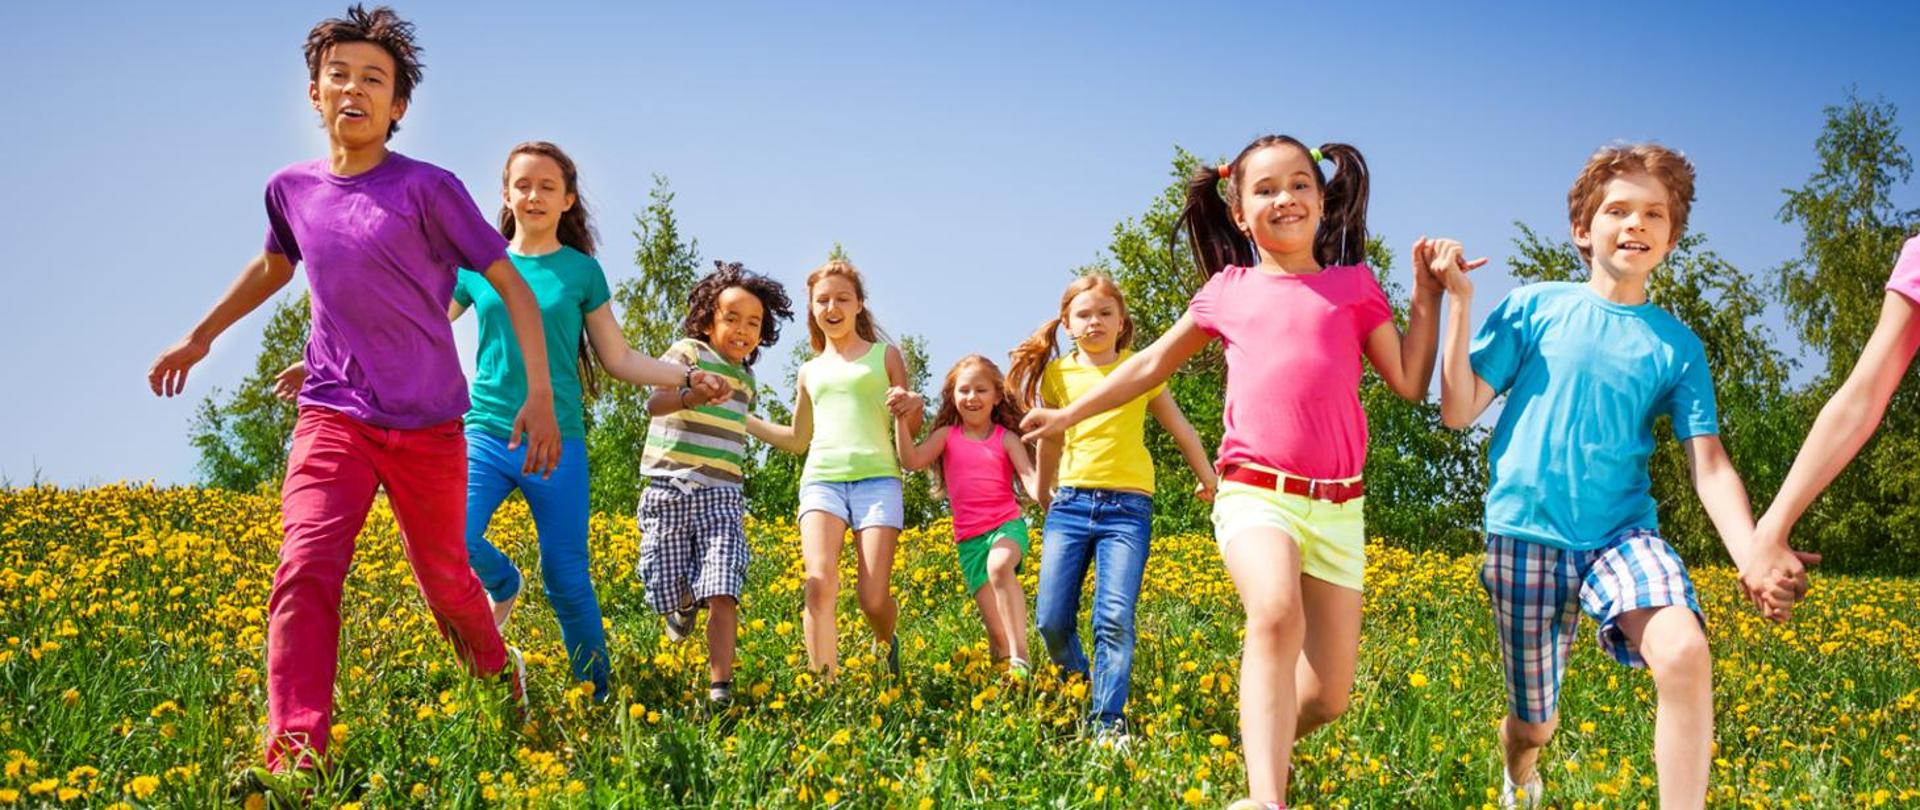 Grupa dzieci ubranych kolorowo na łące